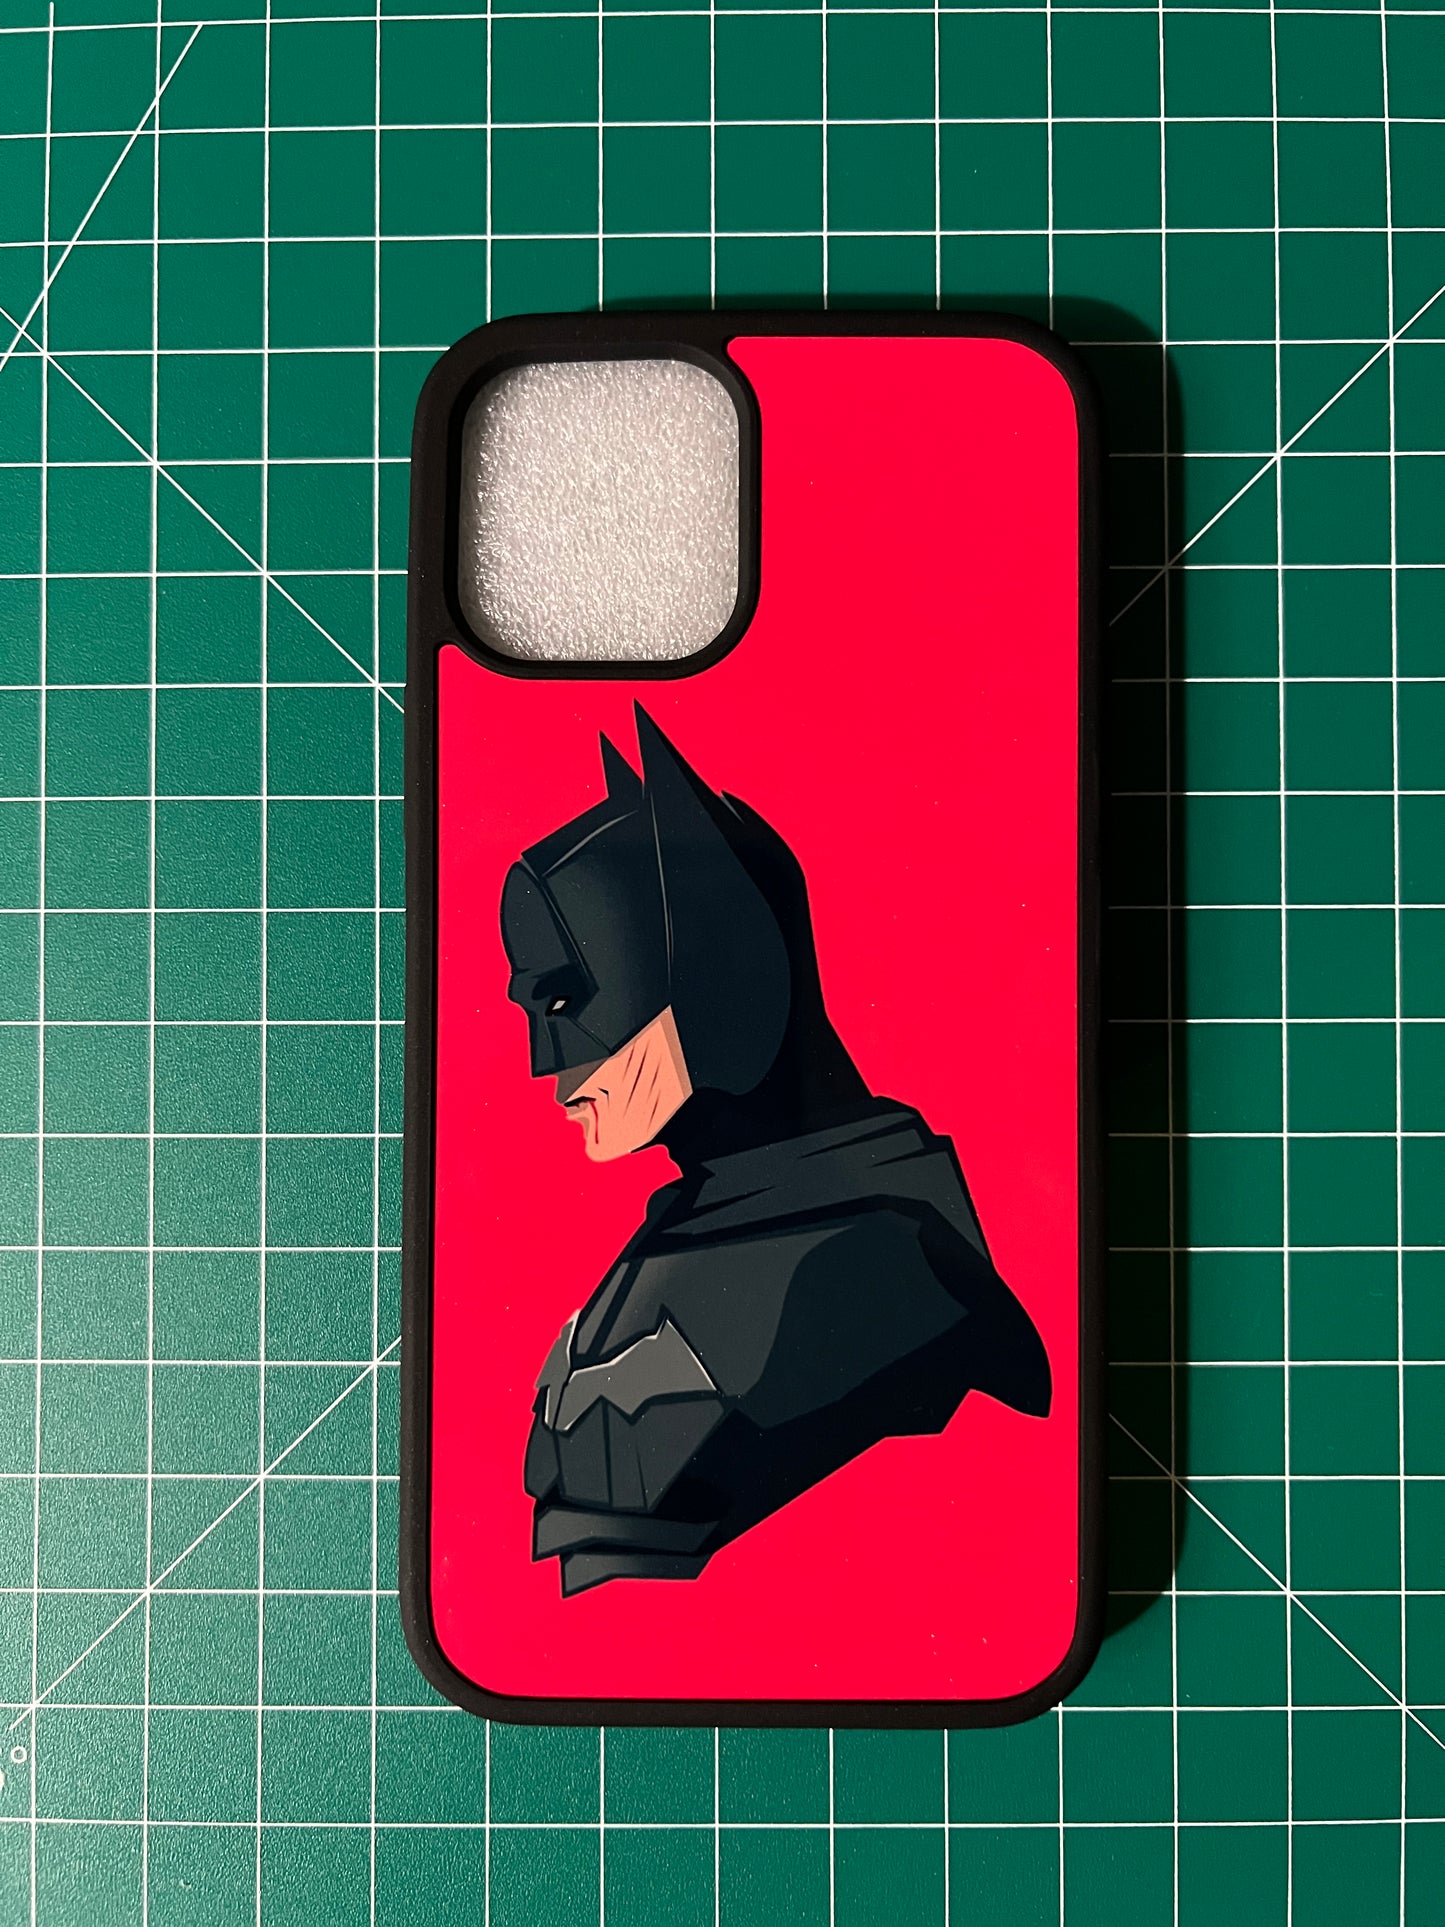 Batman iphone case